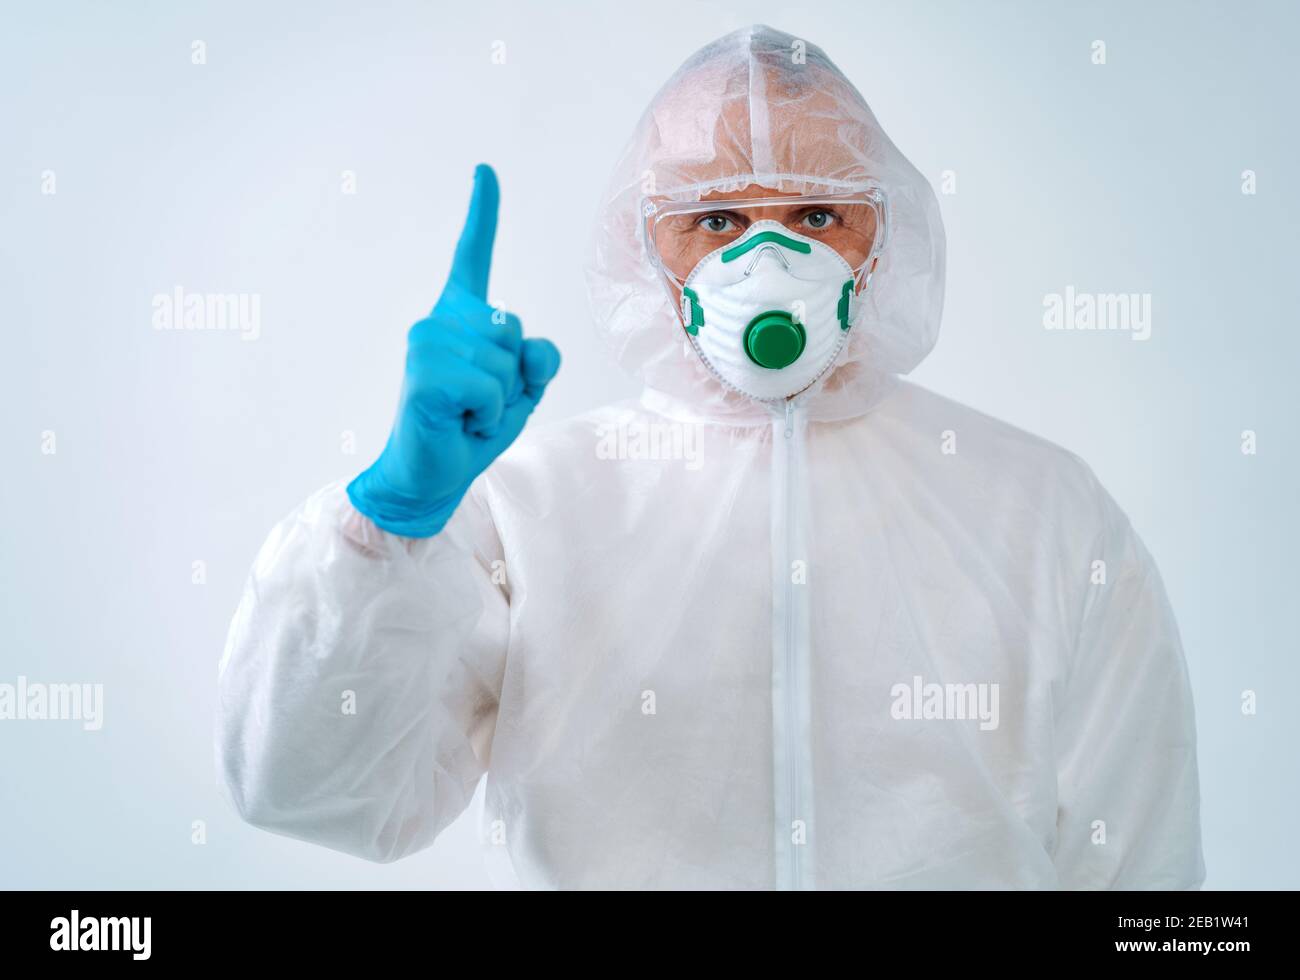 Professionnel de la santé en costume de protection et masque médical pointant vers le haut du doigt. Concept de soins de santé. Banque D'Images